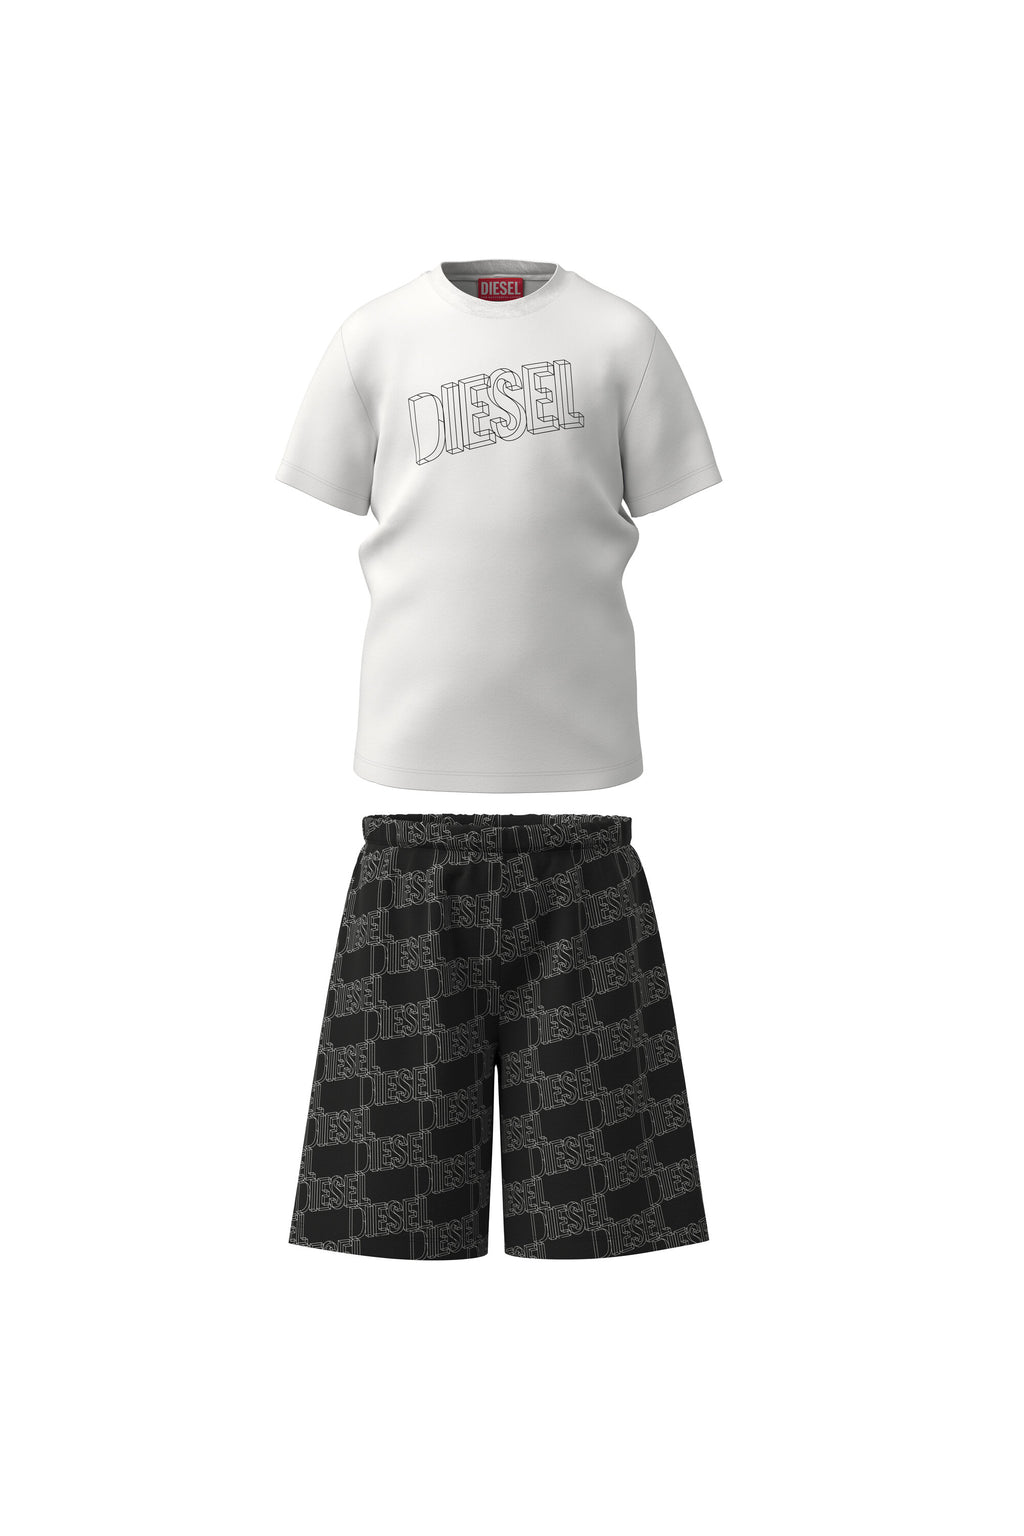 Pijama corto de jersey blanco y negro con logotipo